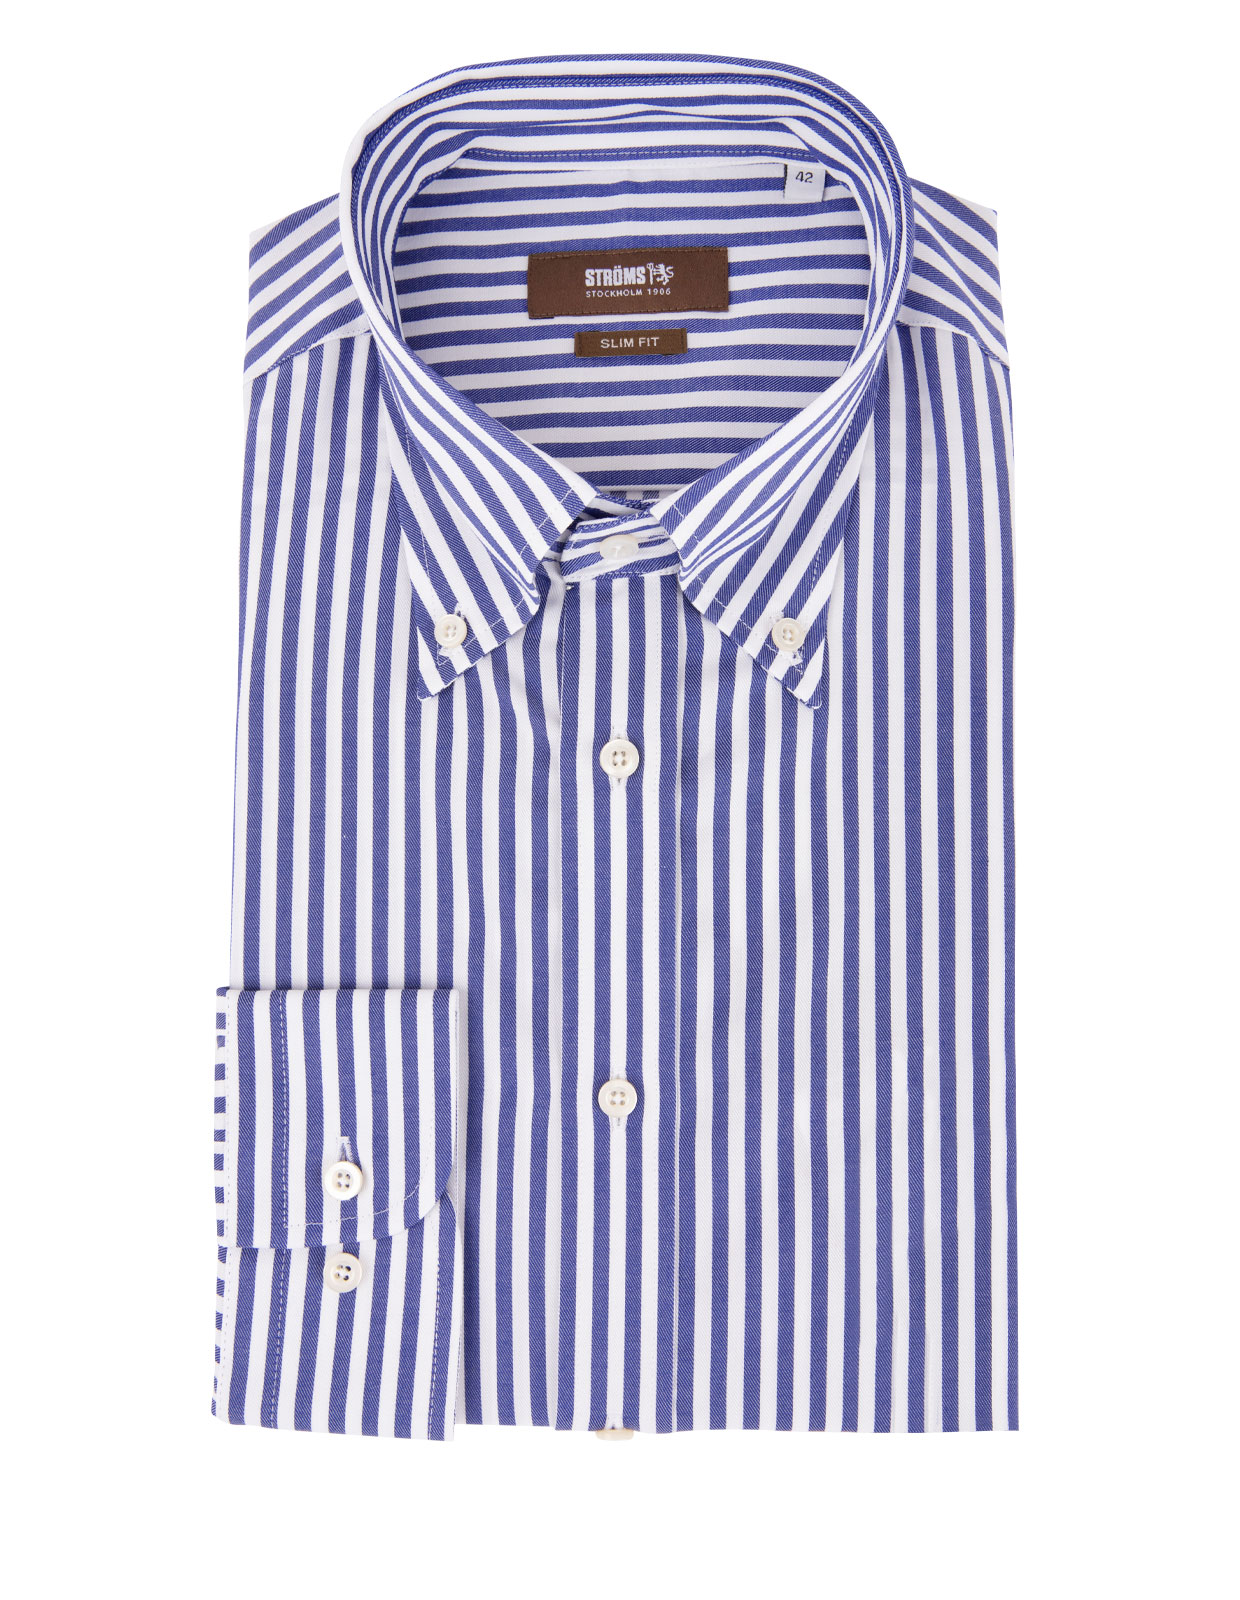 Slim Fit Button Down Cotton Shirt Stripe Blue/White